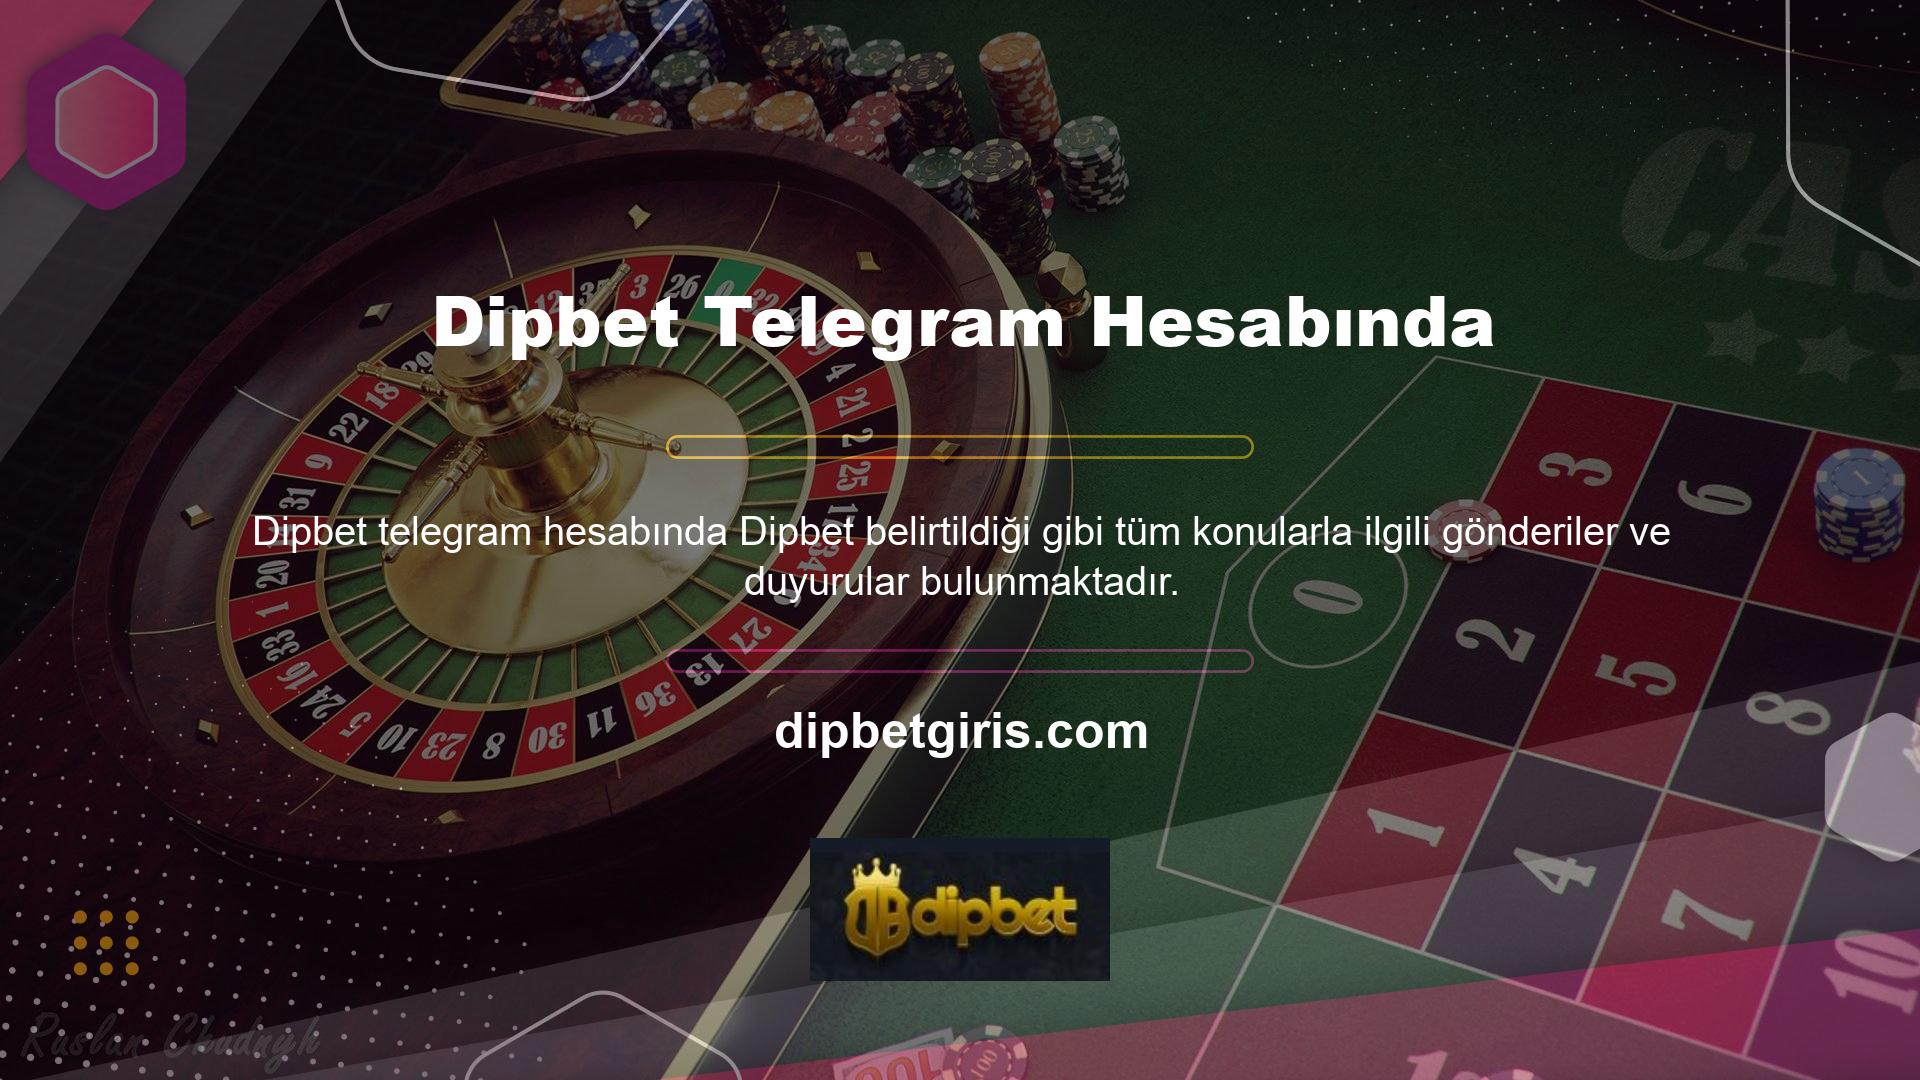 Dipbet Telegram konumunu değiştirdi mi? Dipbet web sitesi, Türkiye ve Türk kanunları uyarınca yabancı bir casino sitesi olduğunun açıkça bilincindedir